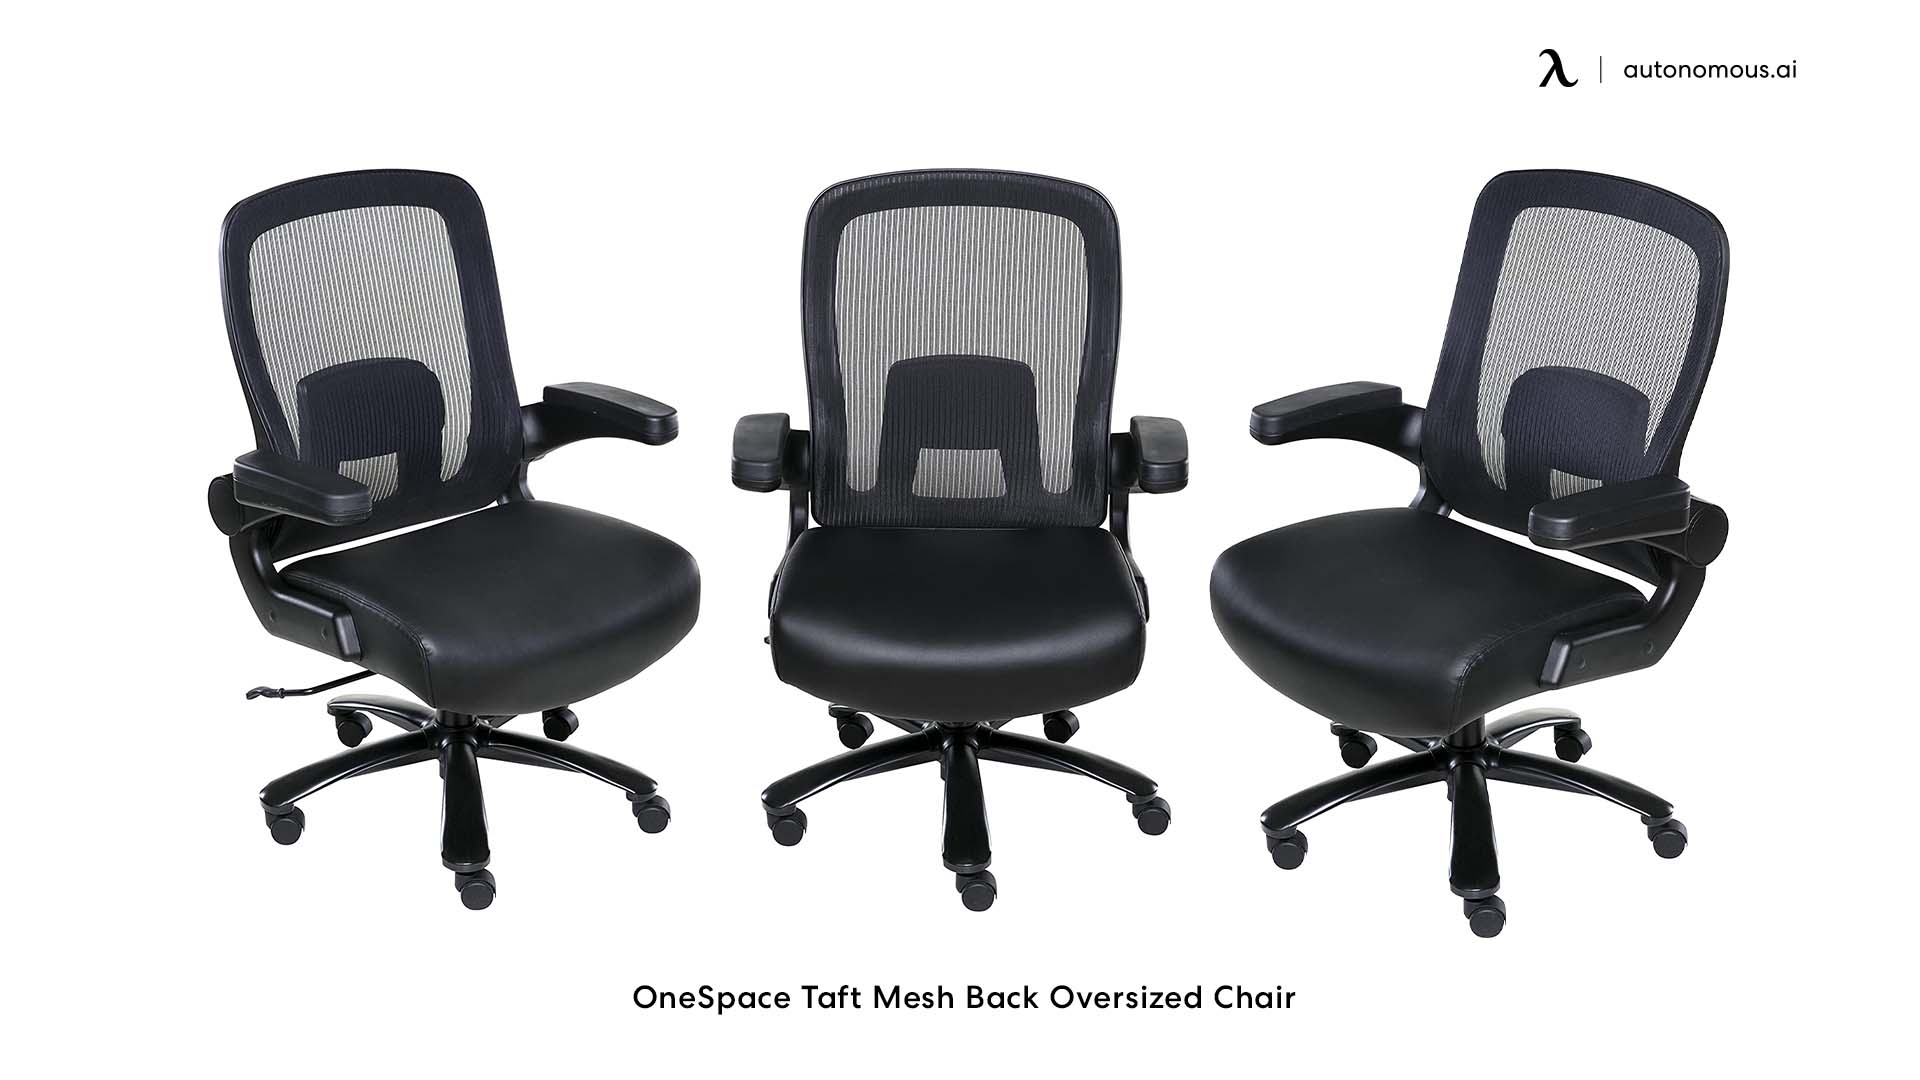 OneSpace Taft Mesh Back Oversized Chair